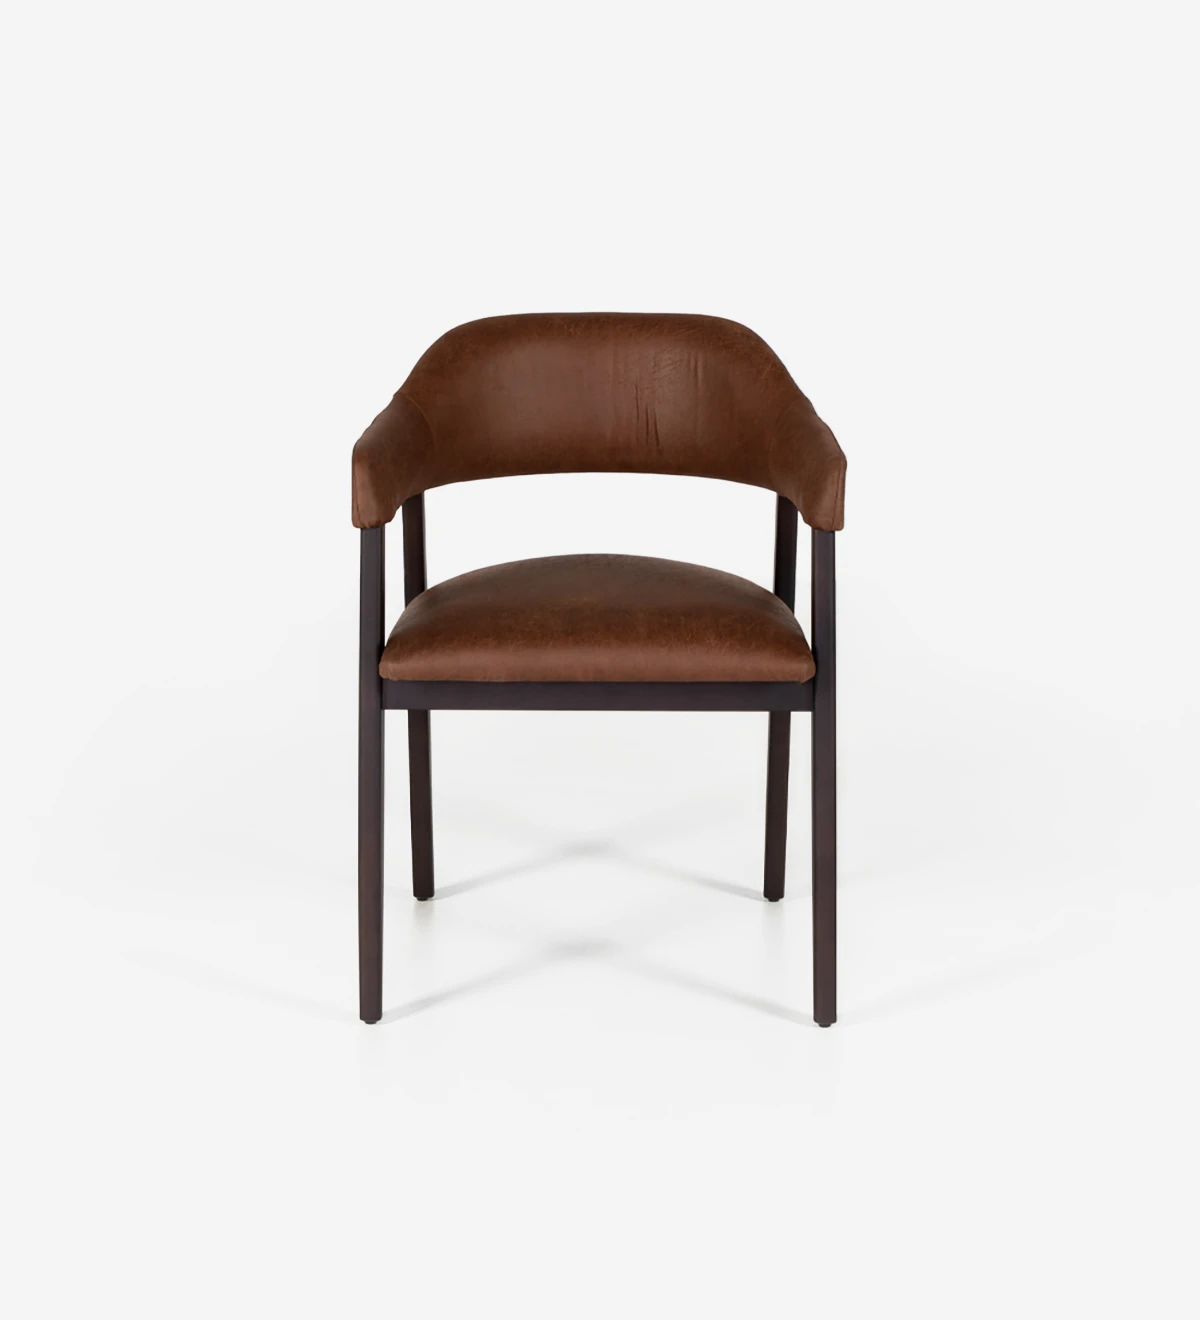 Chaise en bois de frêne brun foncé avec accoudoirs, assise et dossier rembourrés en tissu.